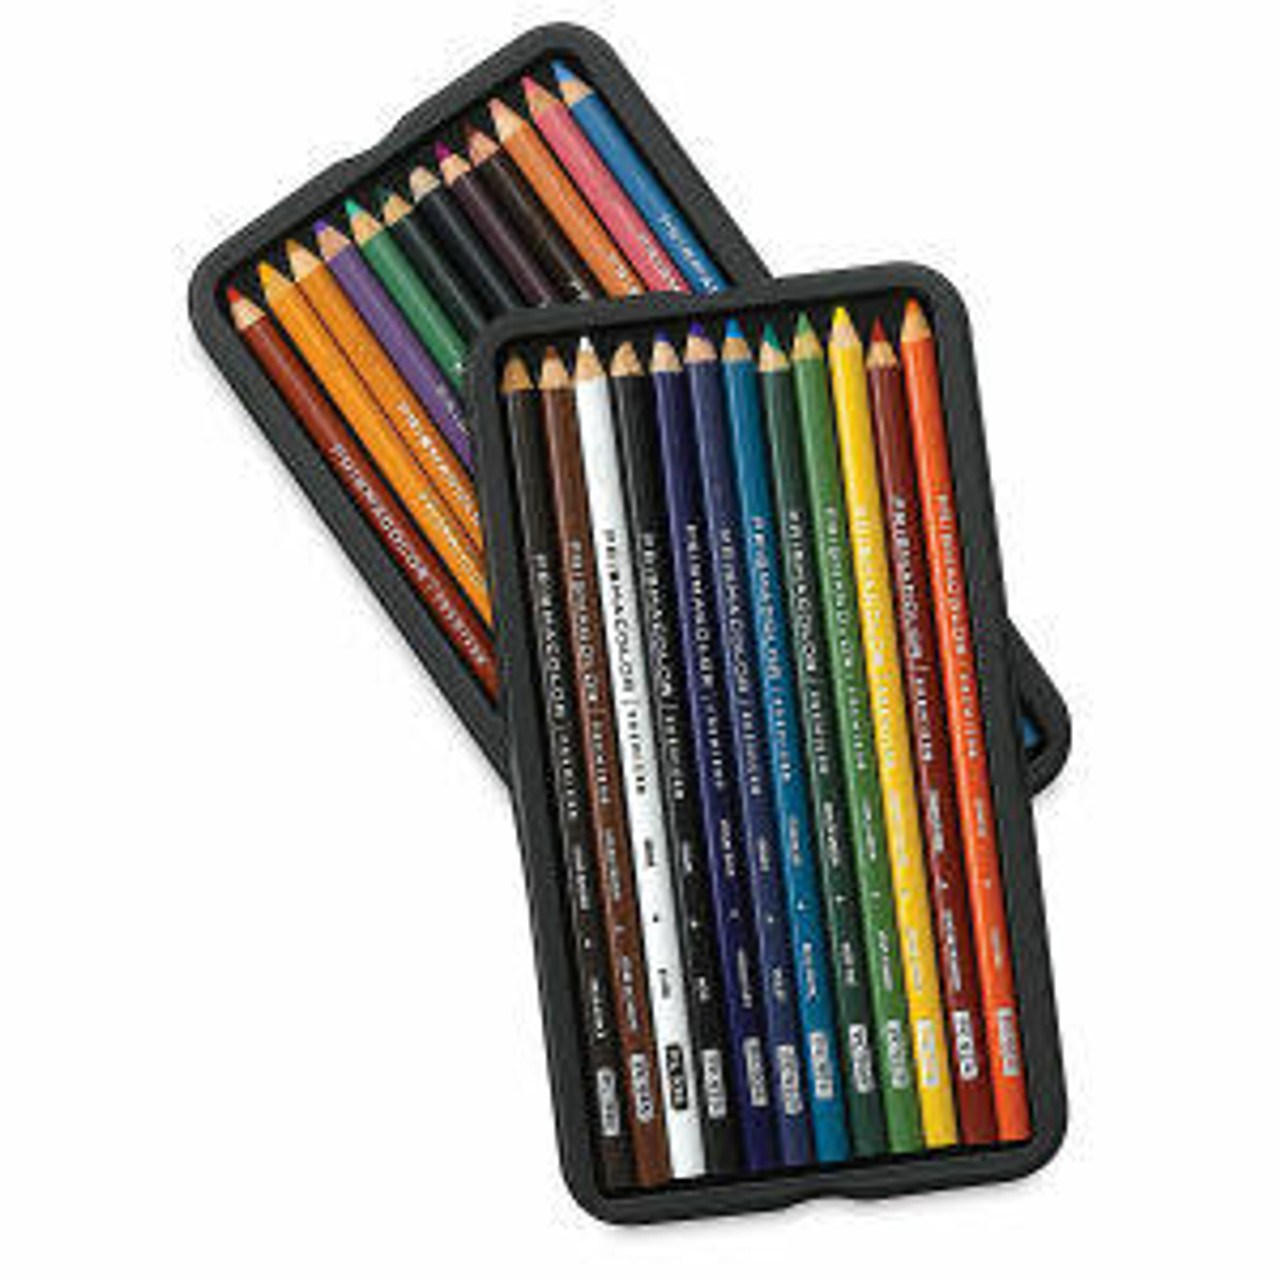 Prismacolor Premier Colored Pencils, Soft Core, 12 Count – Oil